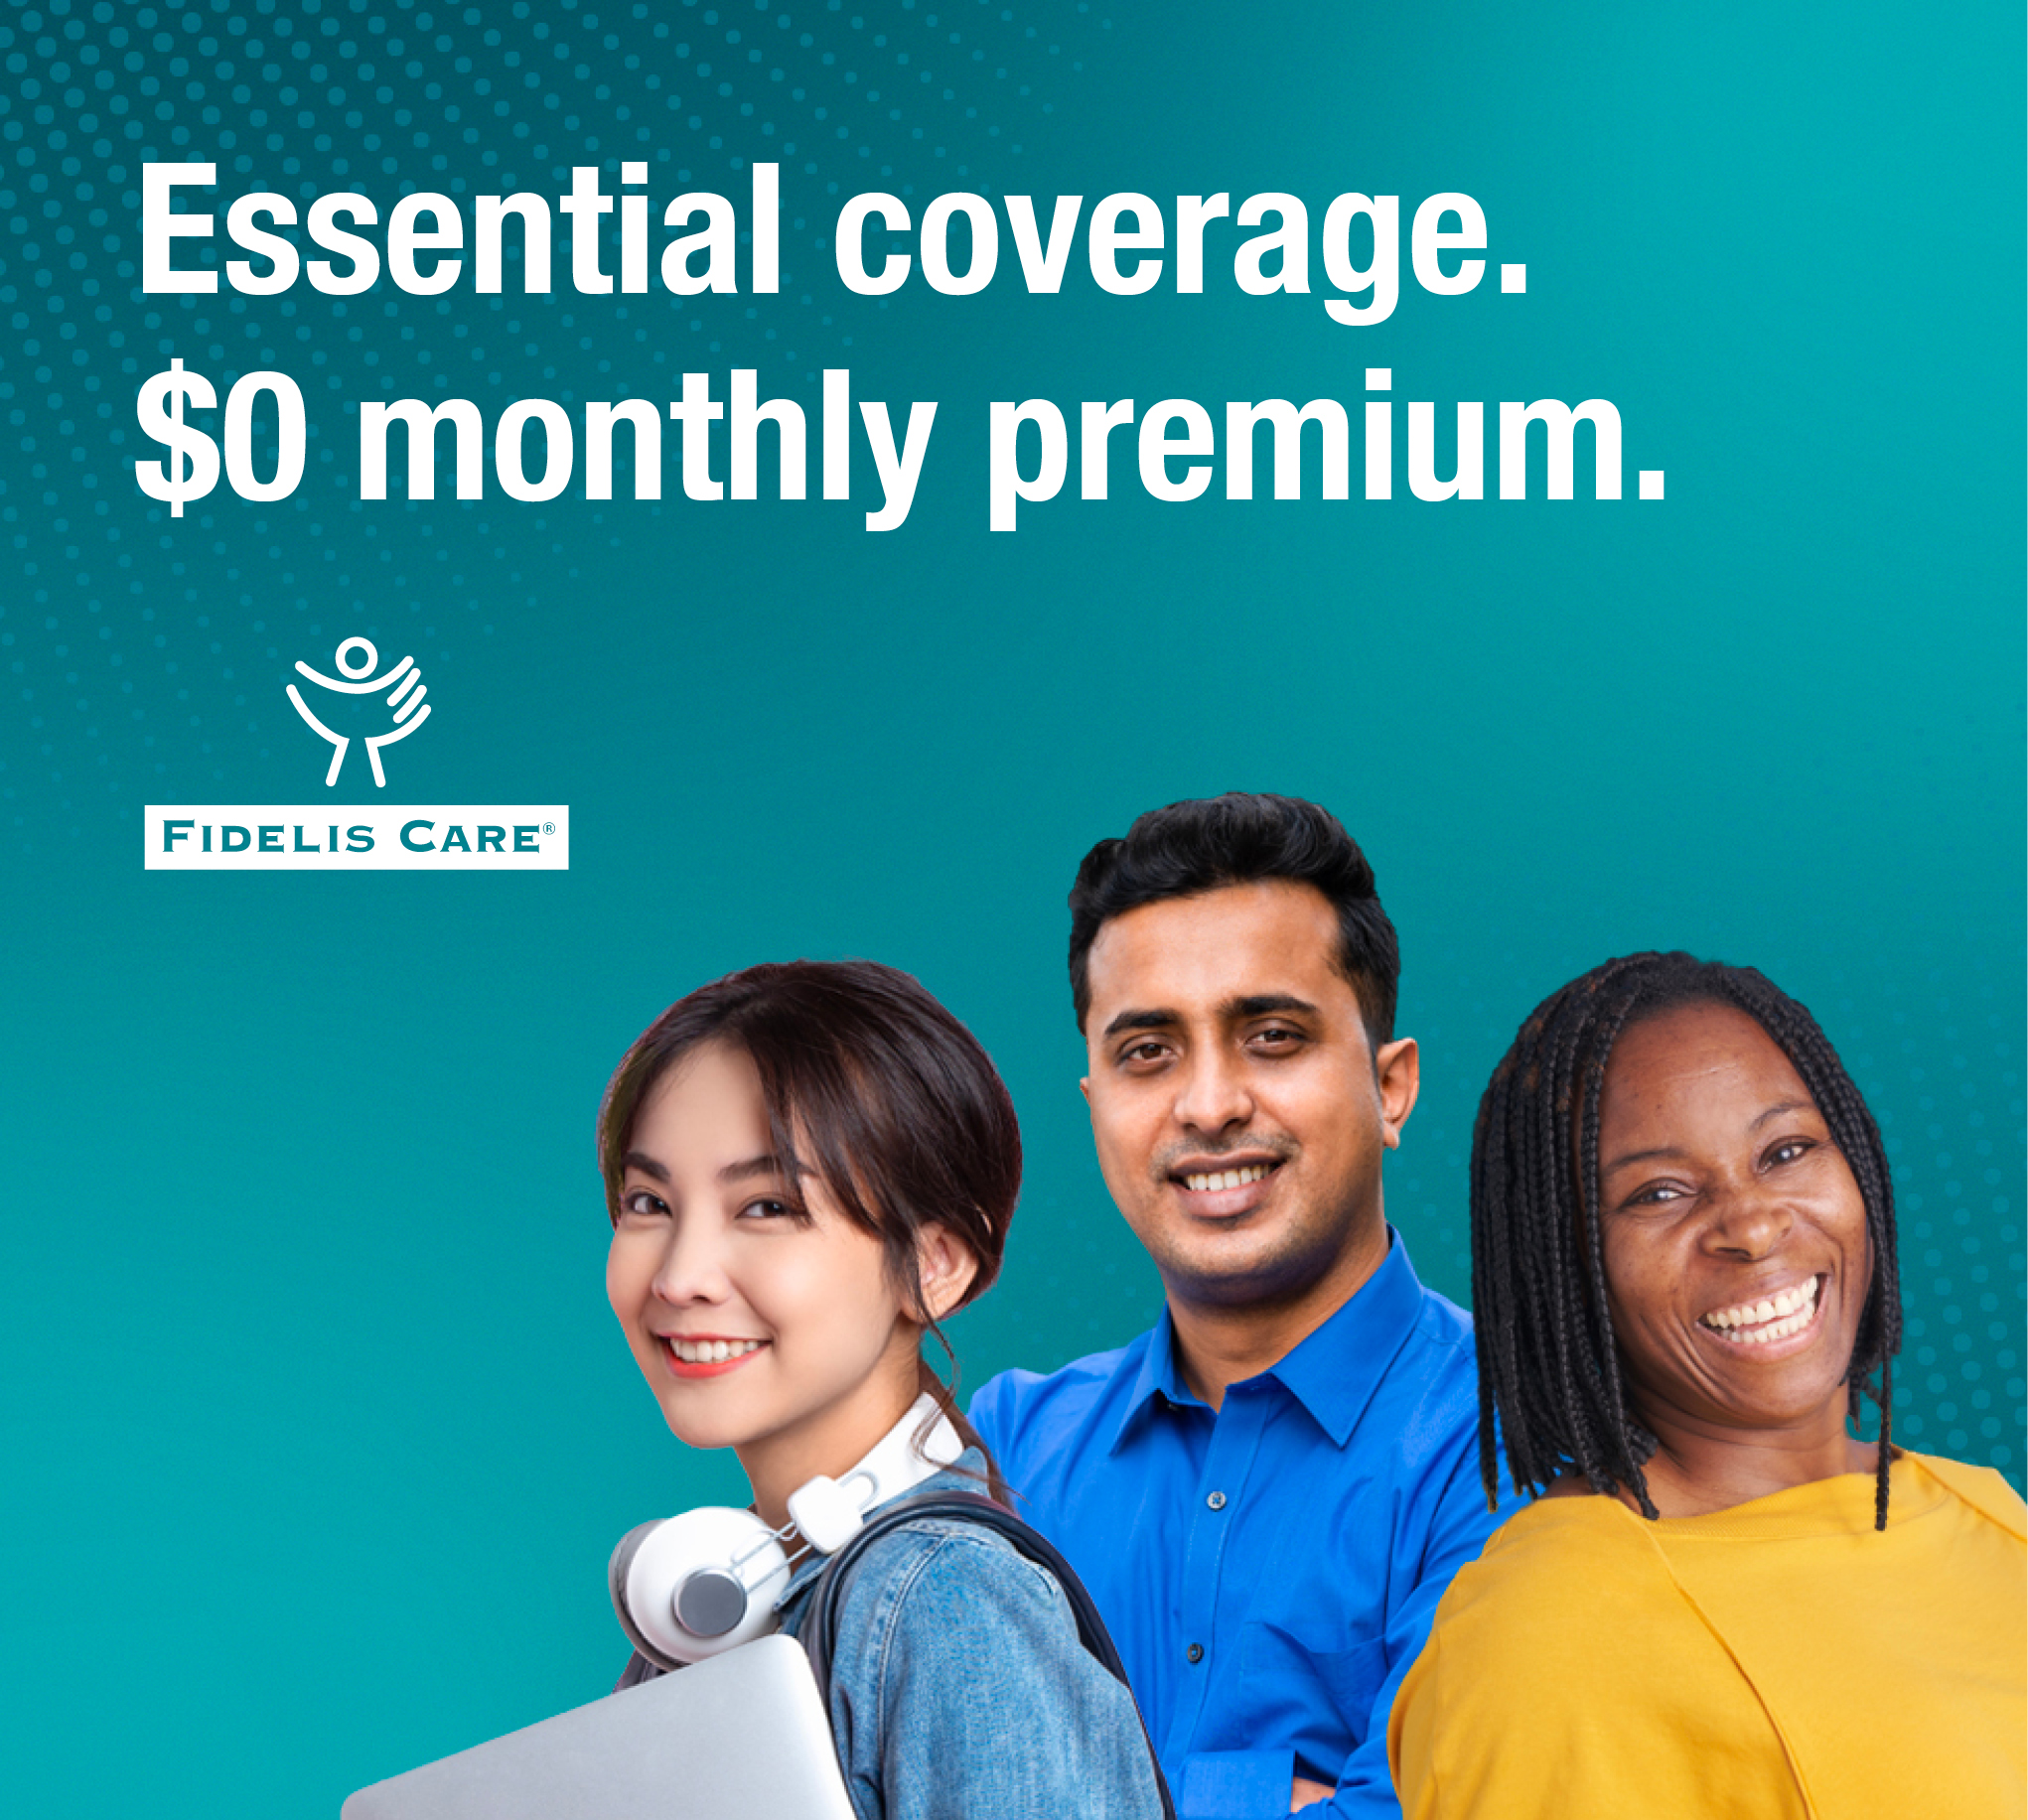 Essential coverage. $0 monthly premium